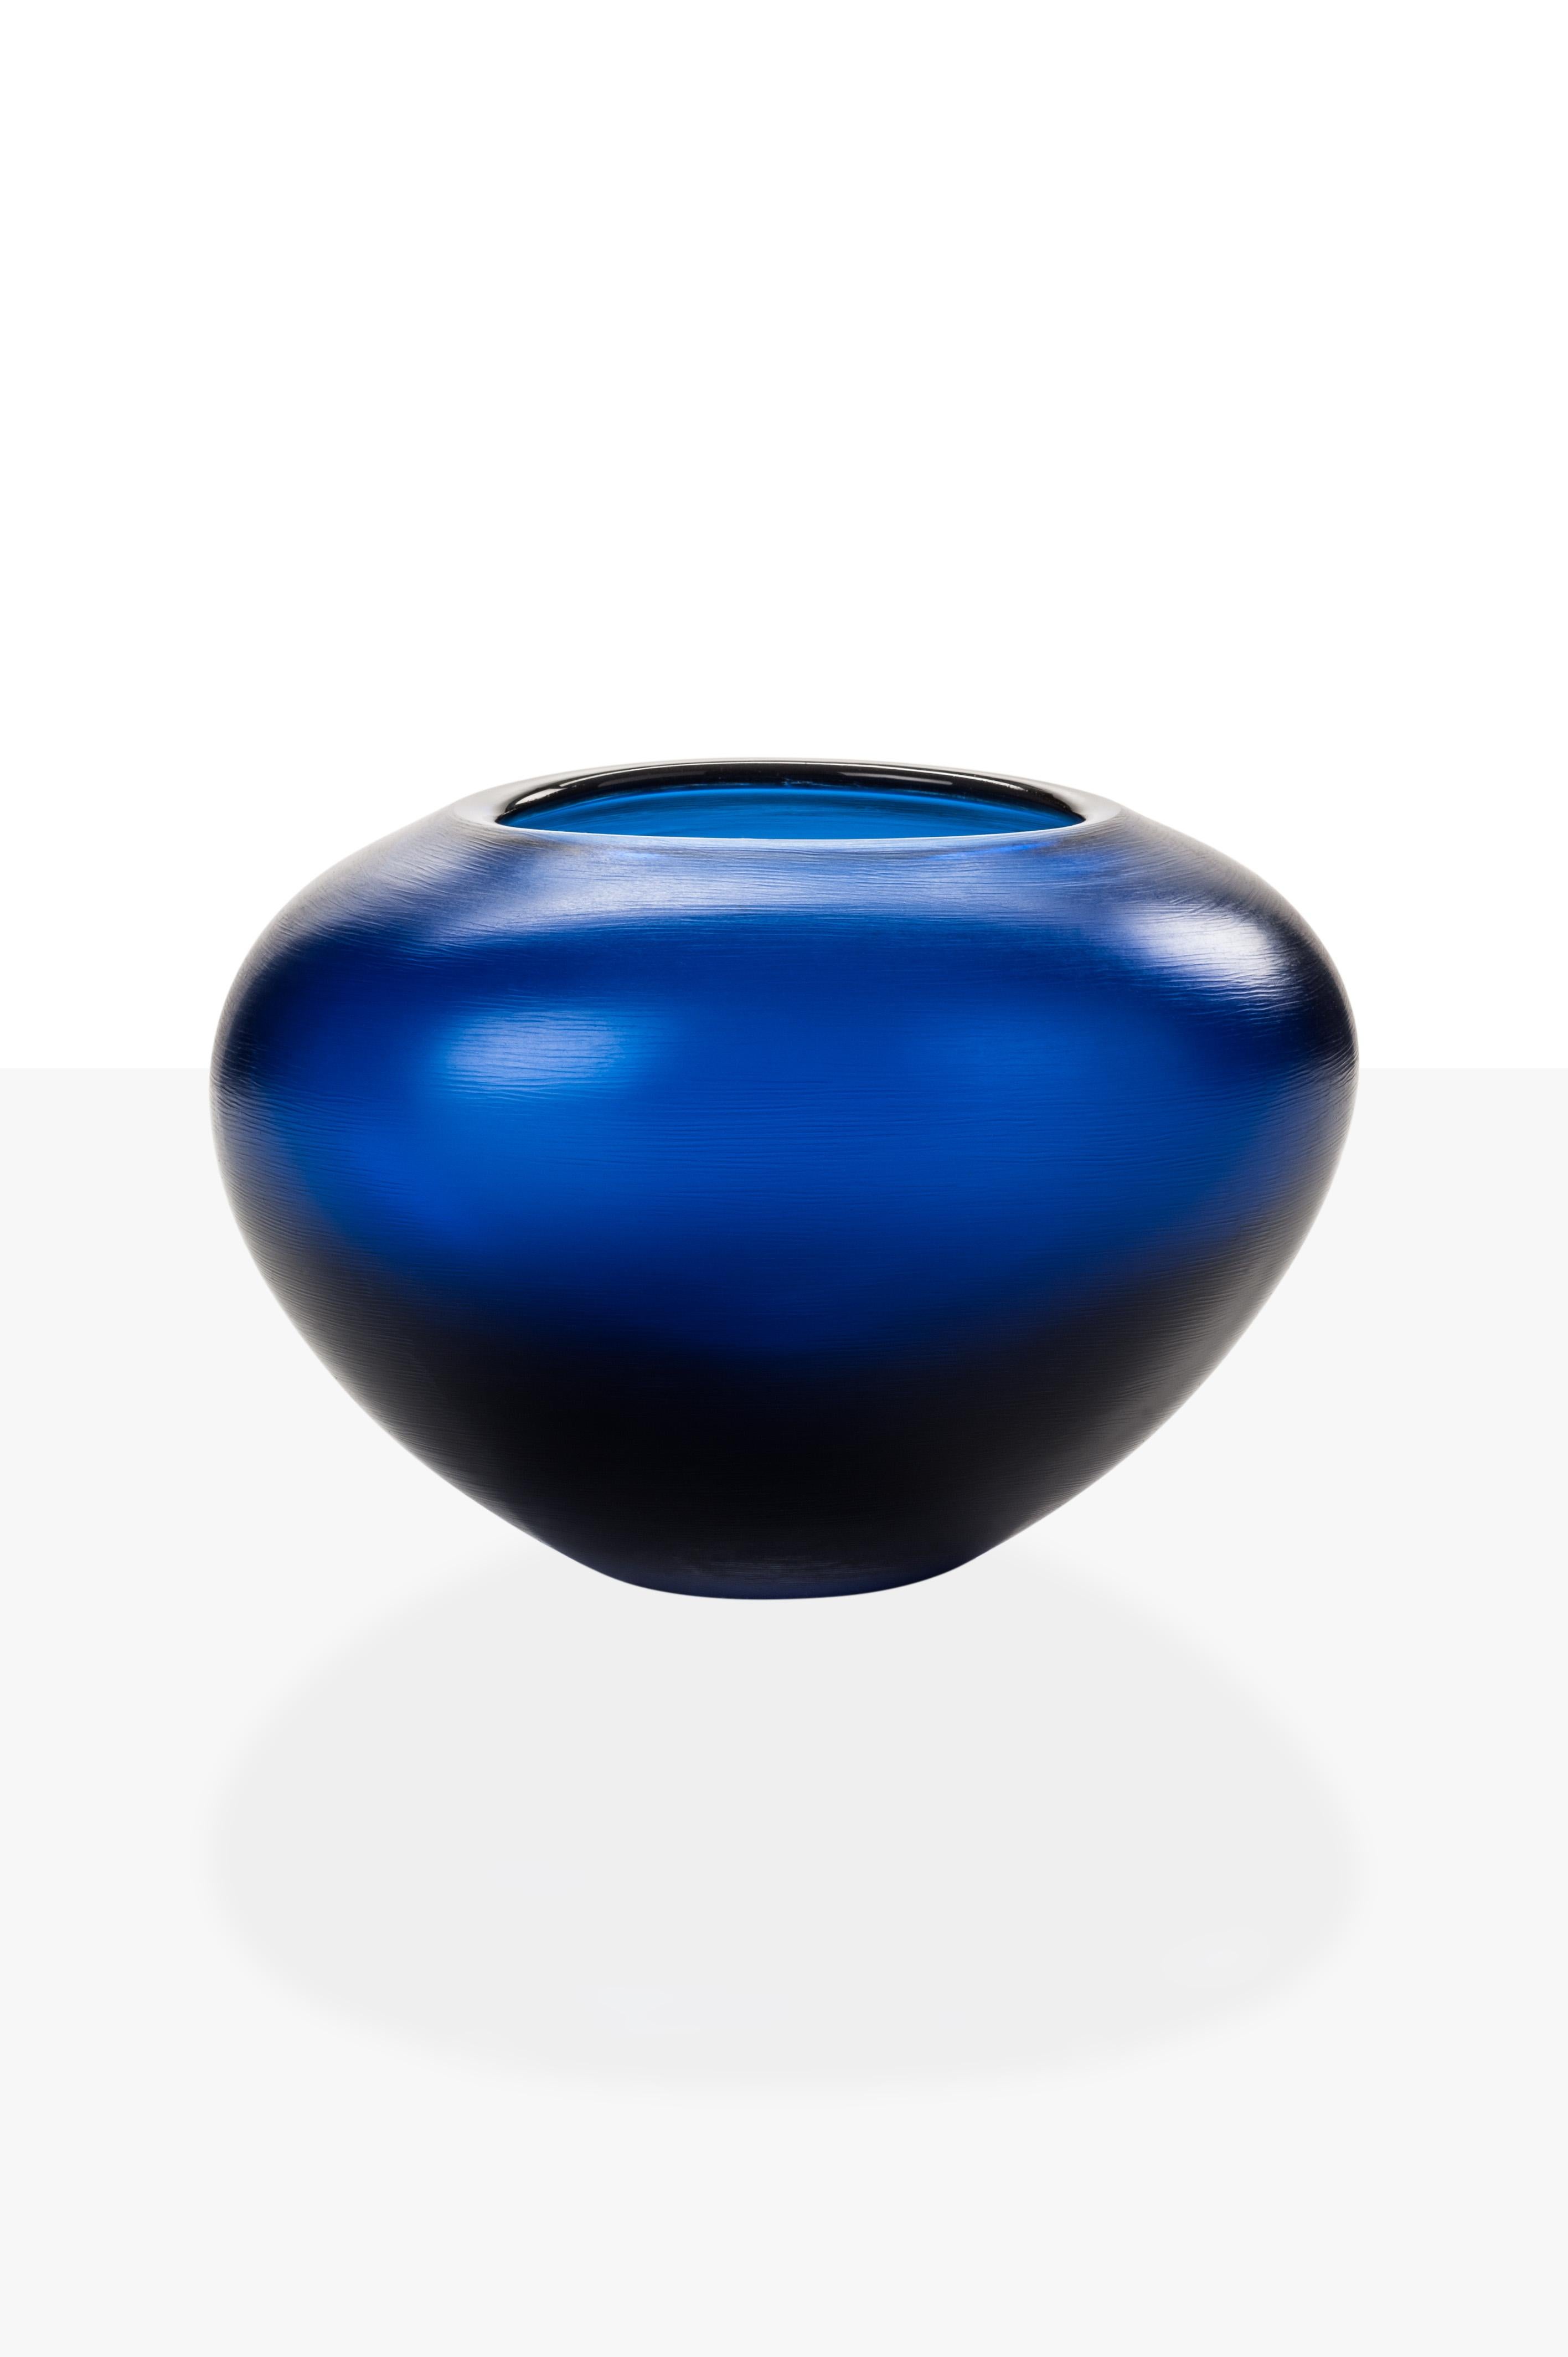 La collection de vases en verre Incisi, conçue par Paolo Venini et fabriquée par Venini, présente une surface gravée. Conçu à l'origine en 1956. Edition numérotée par année, les versions bleu marine sont disponibles en édition limitée à 19 pièces